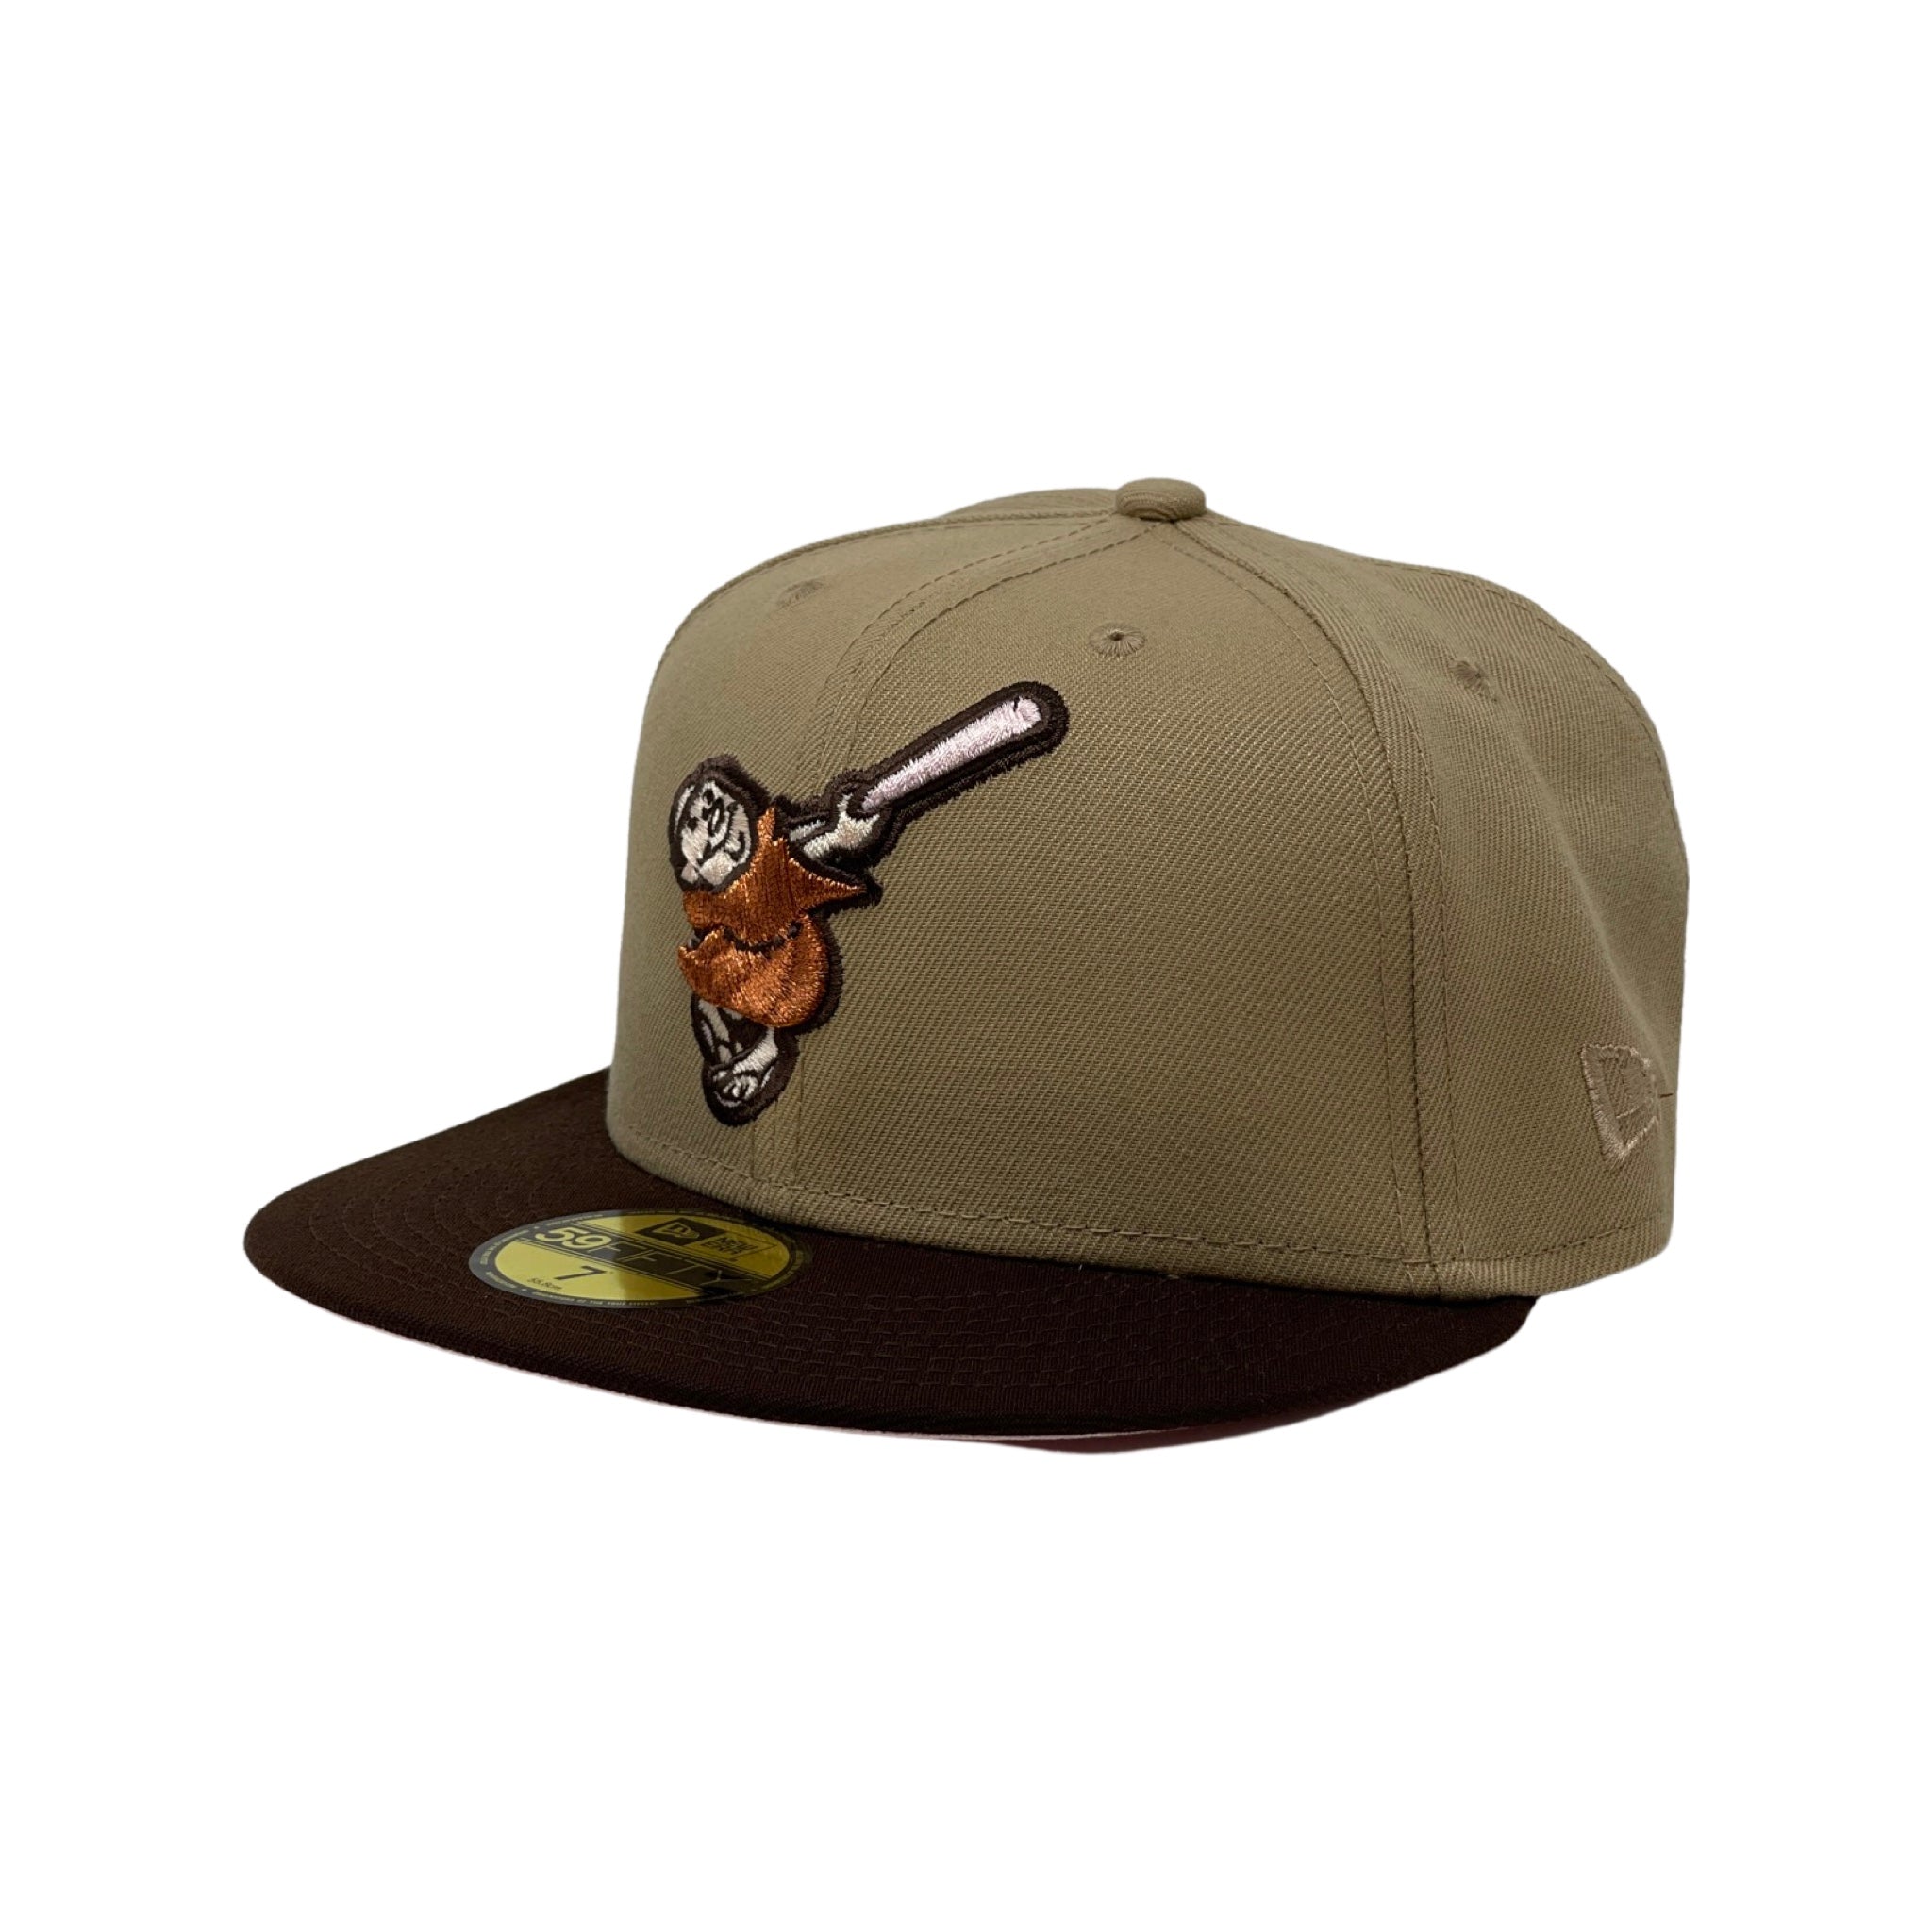 New Era Hat - San Diego Padres - Khaki / Brown – InStyle-Tuscaloosa